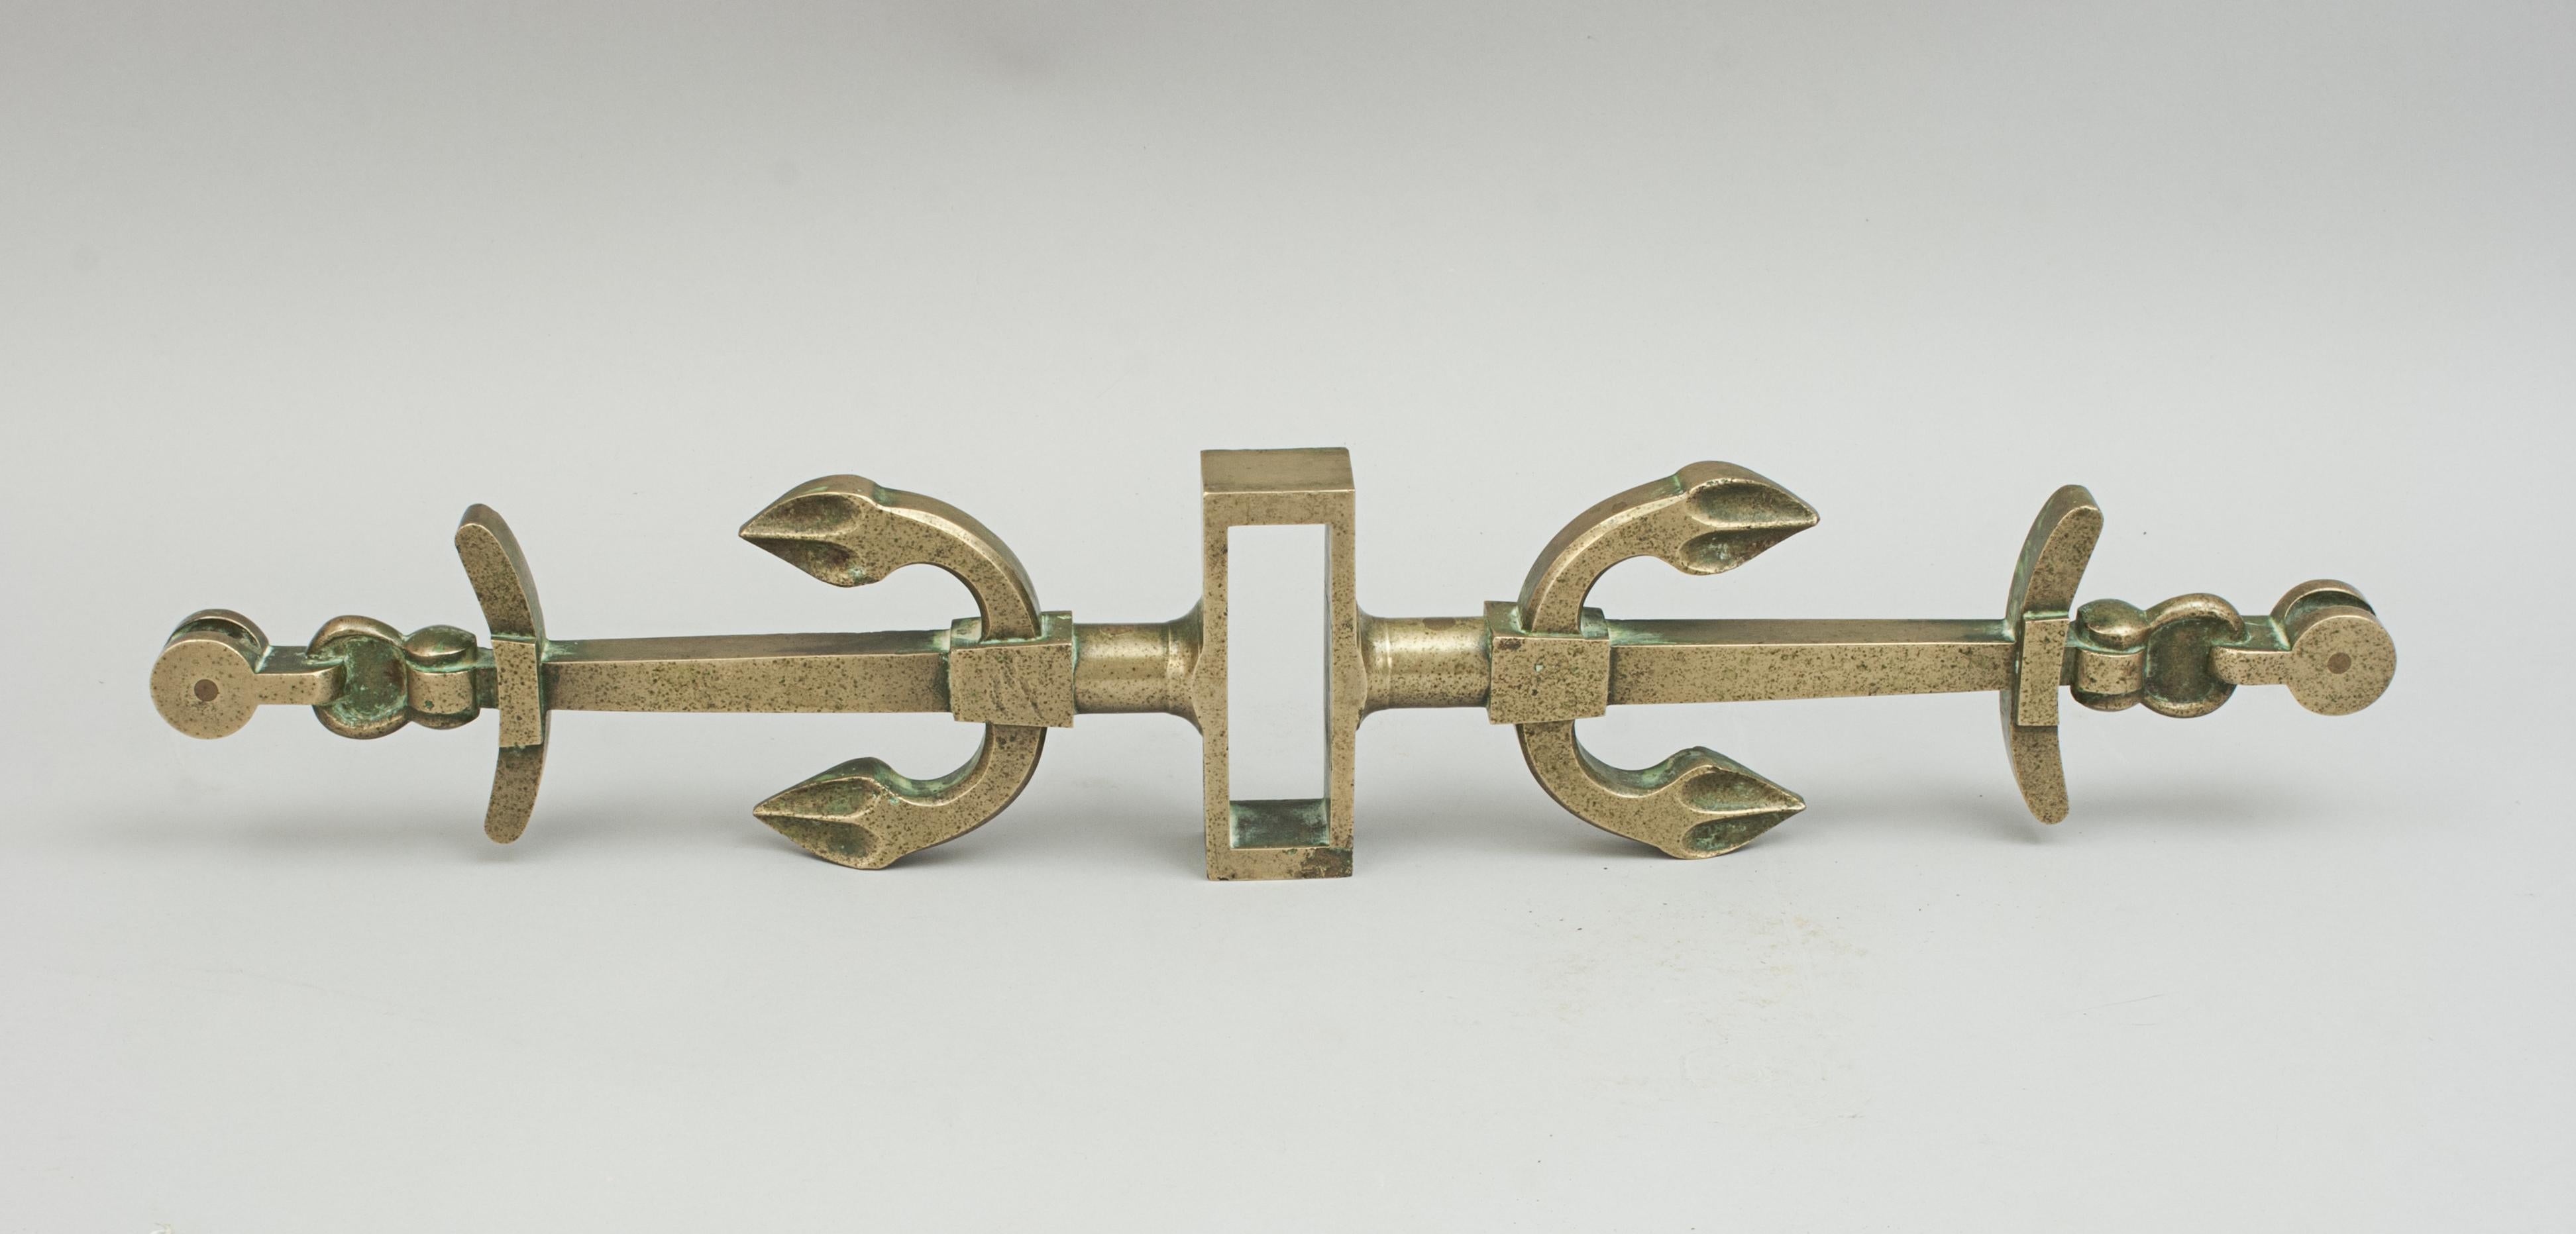 Pinnenjoch aus Bronze.
Ein Ruderjoch aus Bronzeguss des späten 19. Jahrhunderts mit dekorativen Details in Form von zwei gegenüberliegenden Ankern. Es hat eine quadratische Öffnung für den Ruderkopf und einzelne Messingrollen an den beiden Enden.